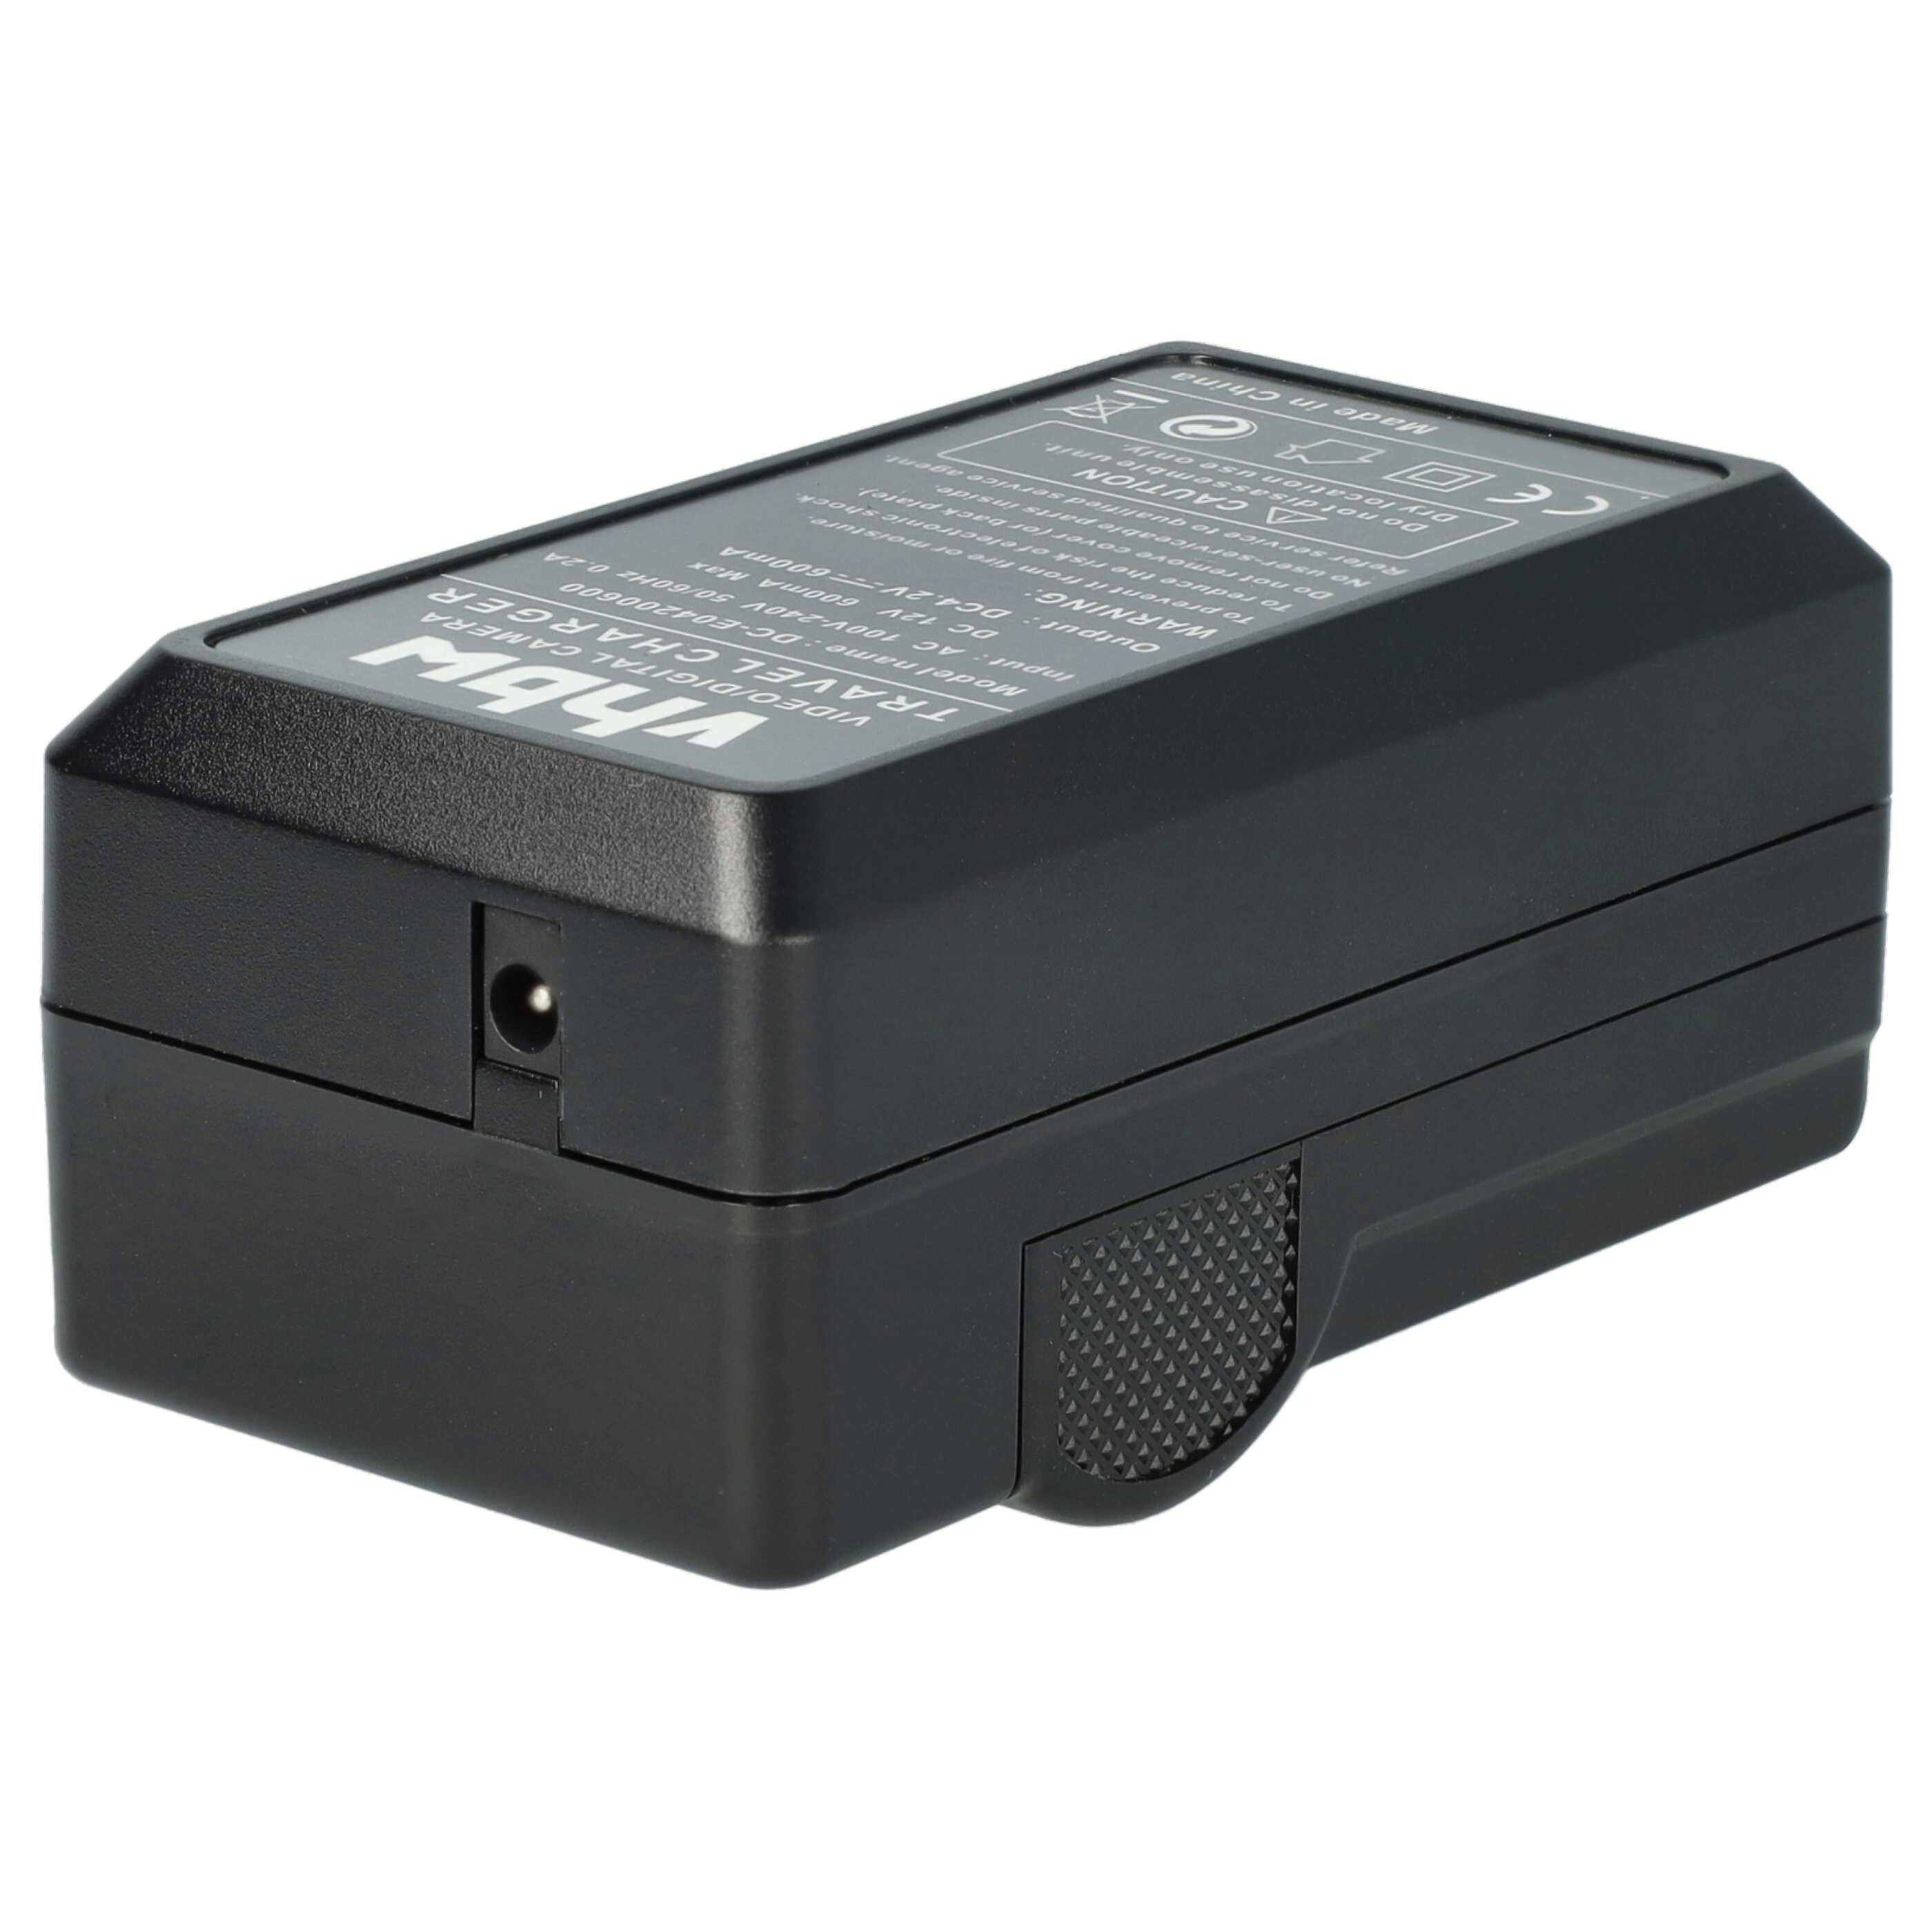 Akku Ladegerät passend für Everio GZ-V500 Kamera u.a. - 0,6 A, 4,2 V